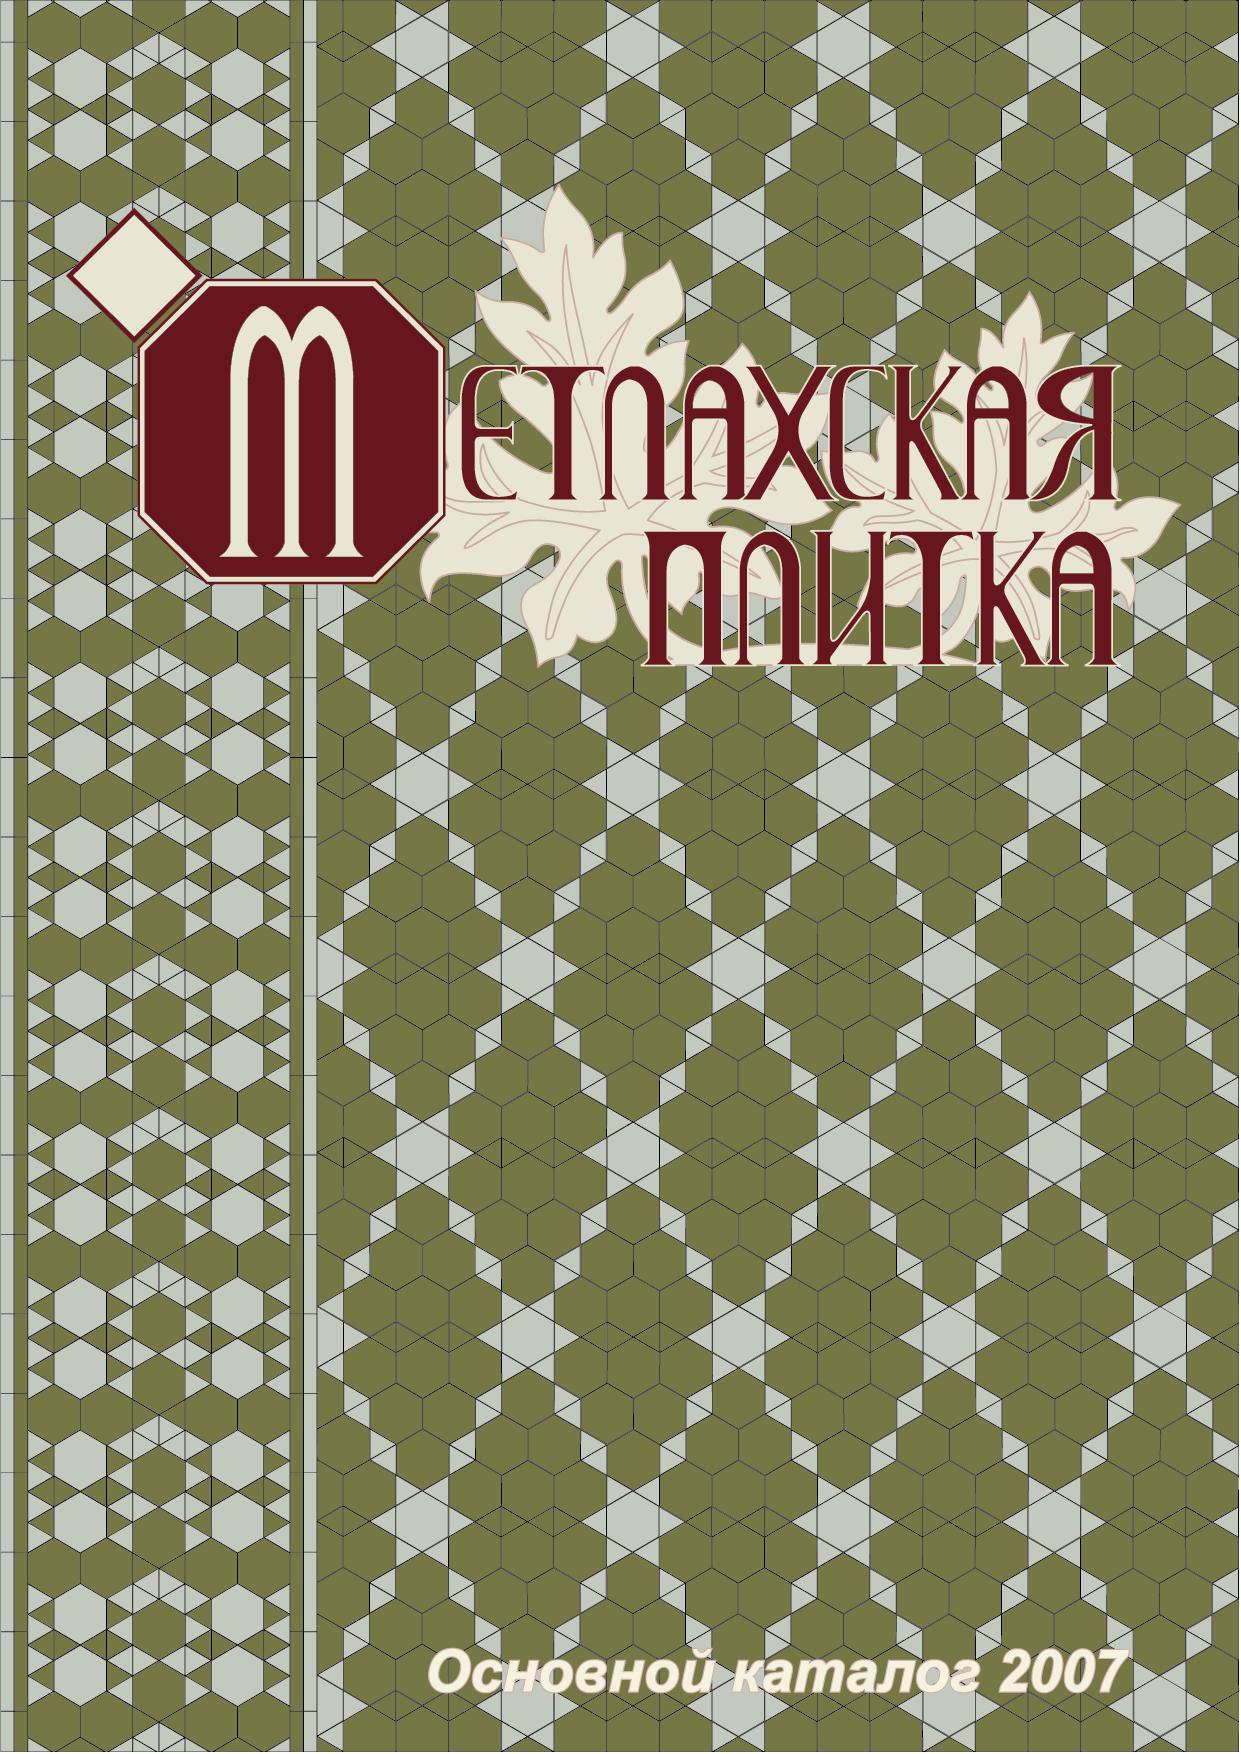 "Метлахская плитка - Основной каталог 2007"